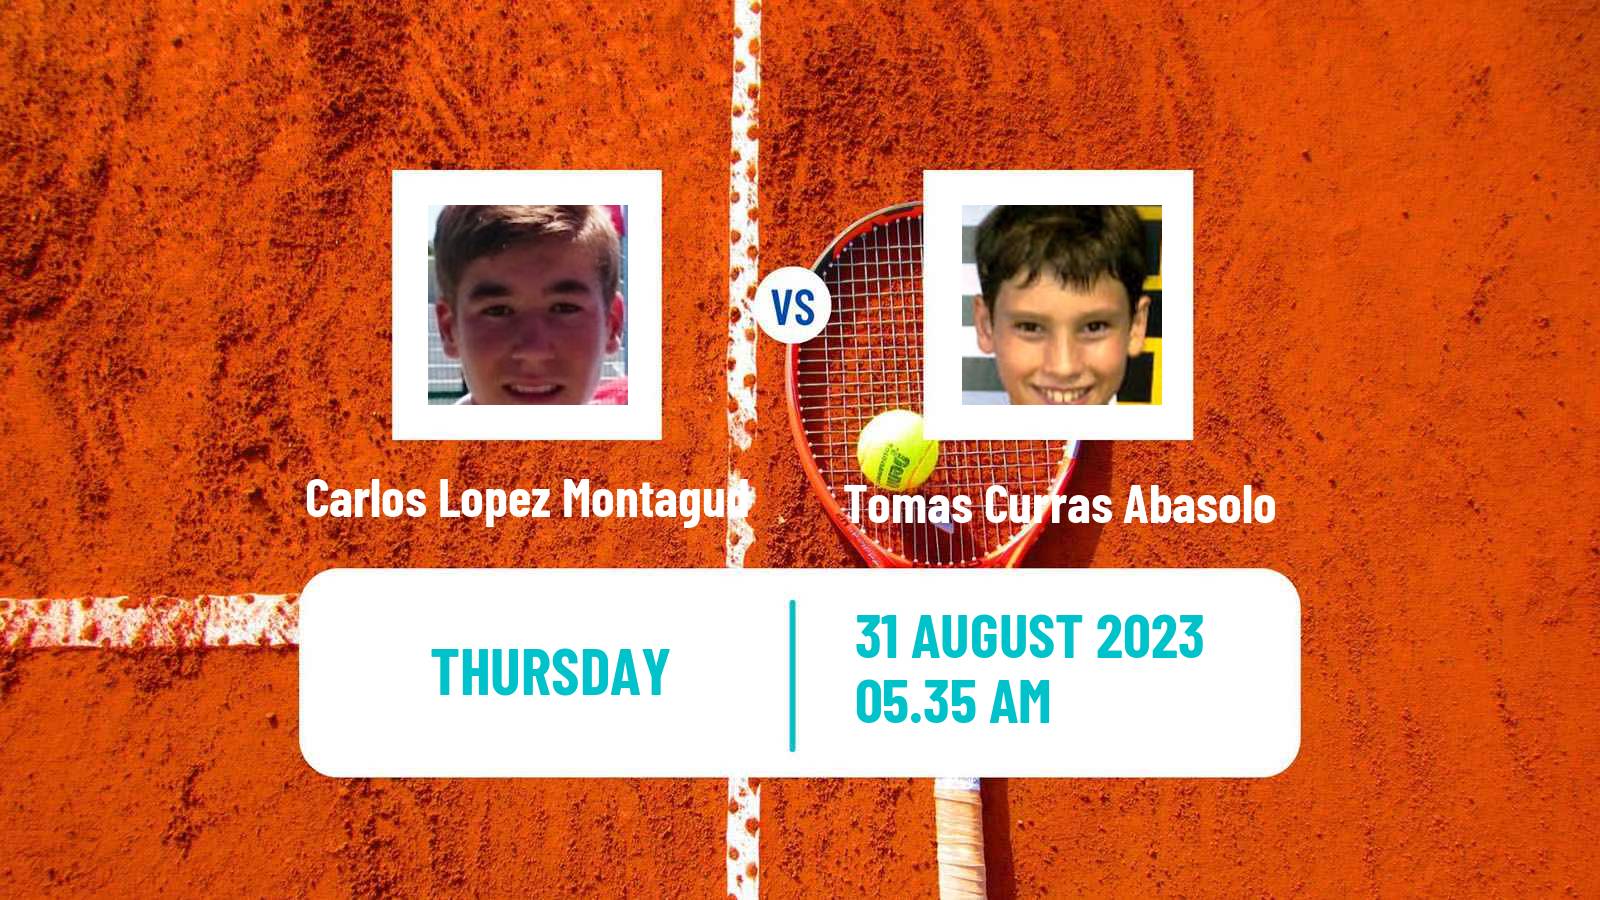 Tennis ITF M25 Oviedo Men Carlos Lopez Montagud - Tomas Curras Abasolo